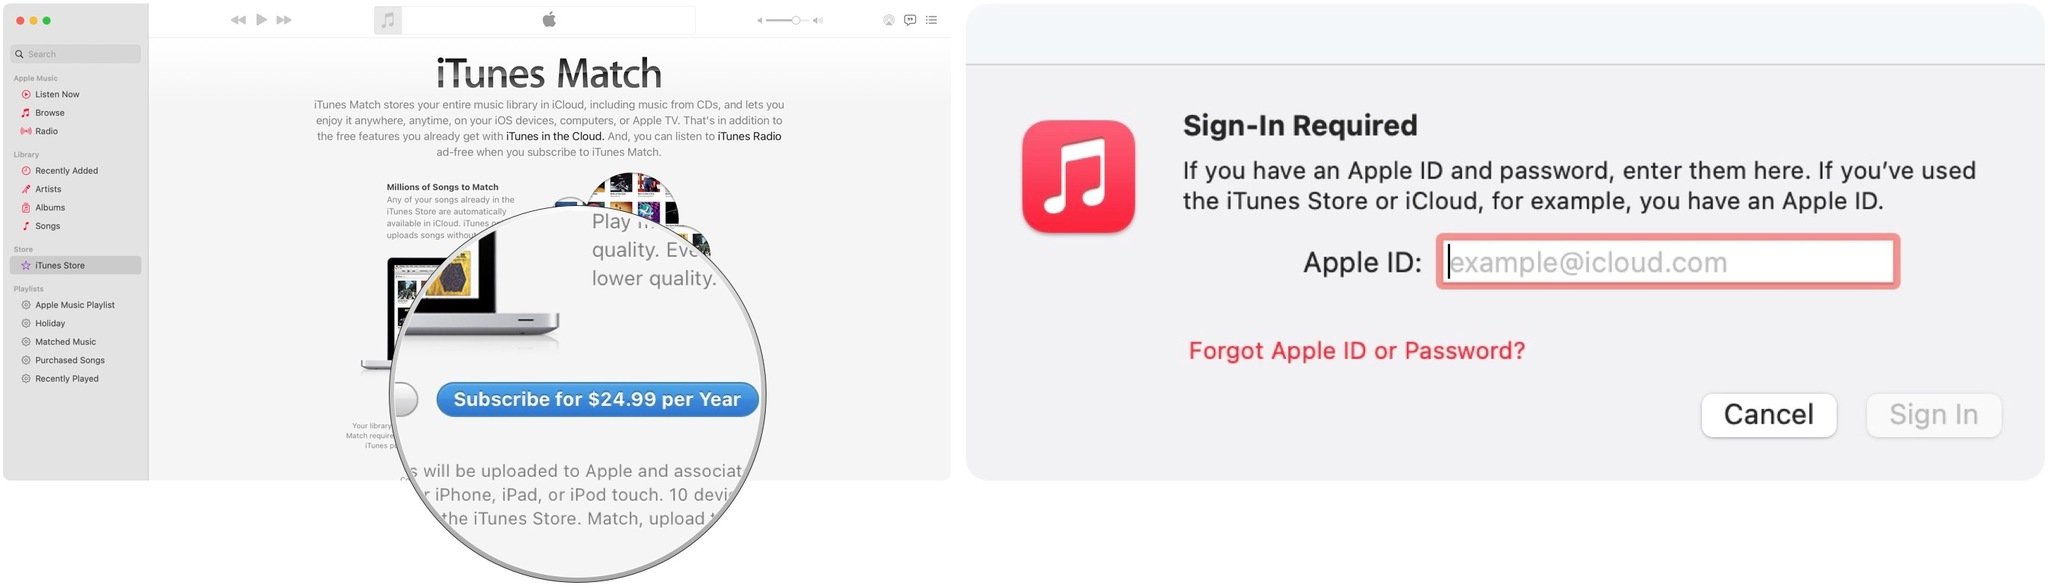 Чтобы включить музыкальную библиотеку iCloud на вашем компьютере с помощью iTunes Match, выберите «Подписаться за 24,99 долларов США в год», затем введите свой Apple ID и пароль.  Выберите «Использовать музыкальную библиотеку iCloud», затем нажмите «Добавить этот компьютер».